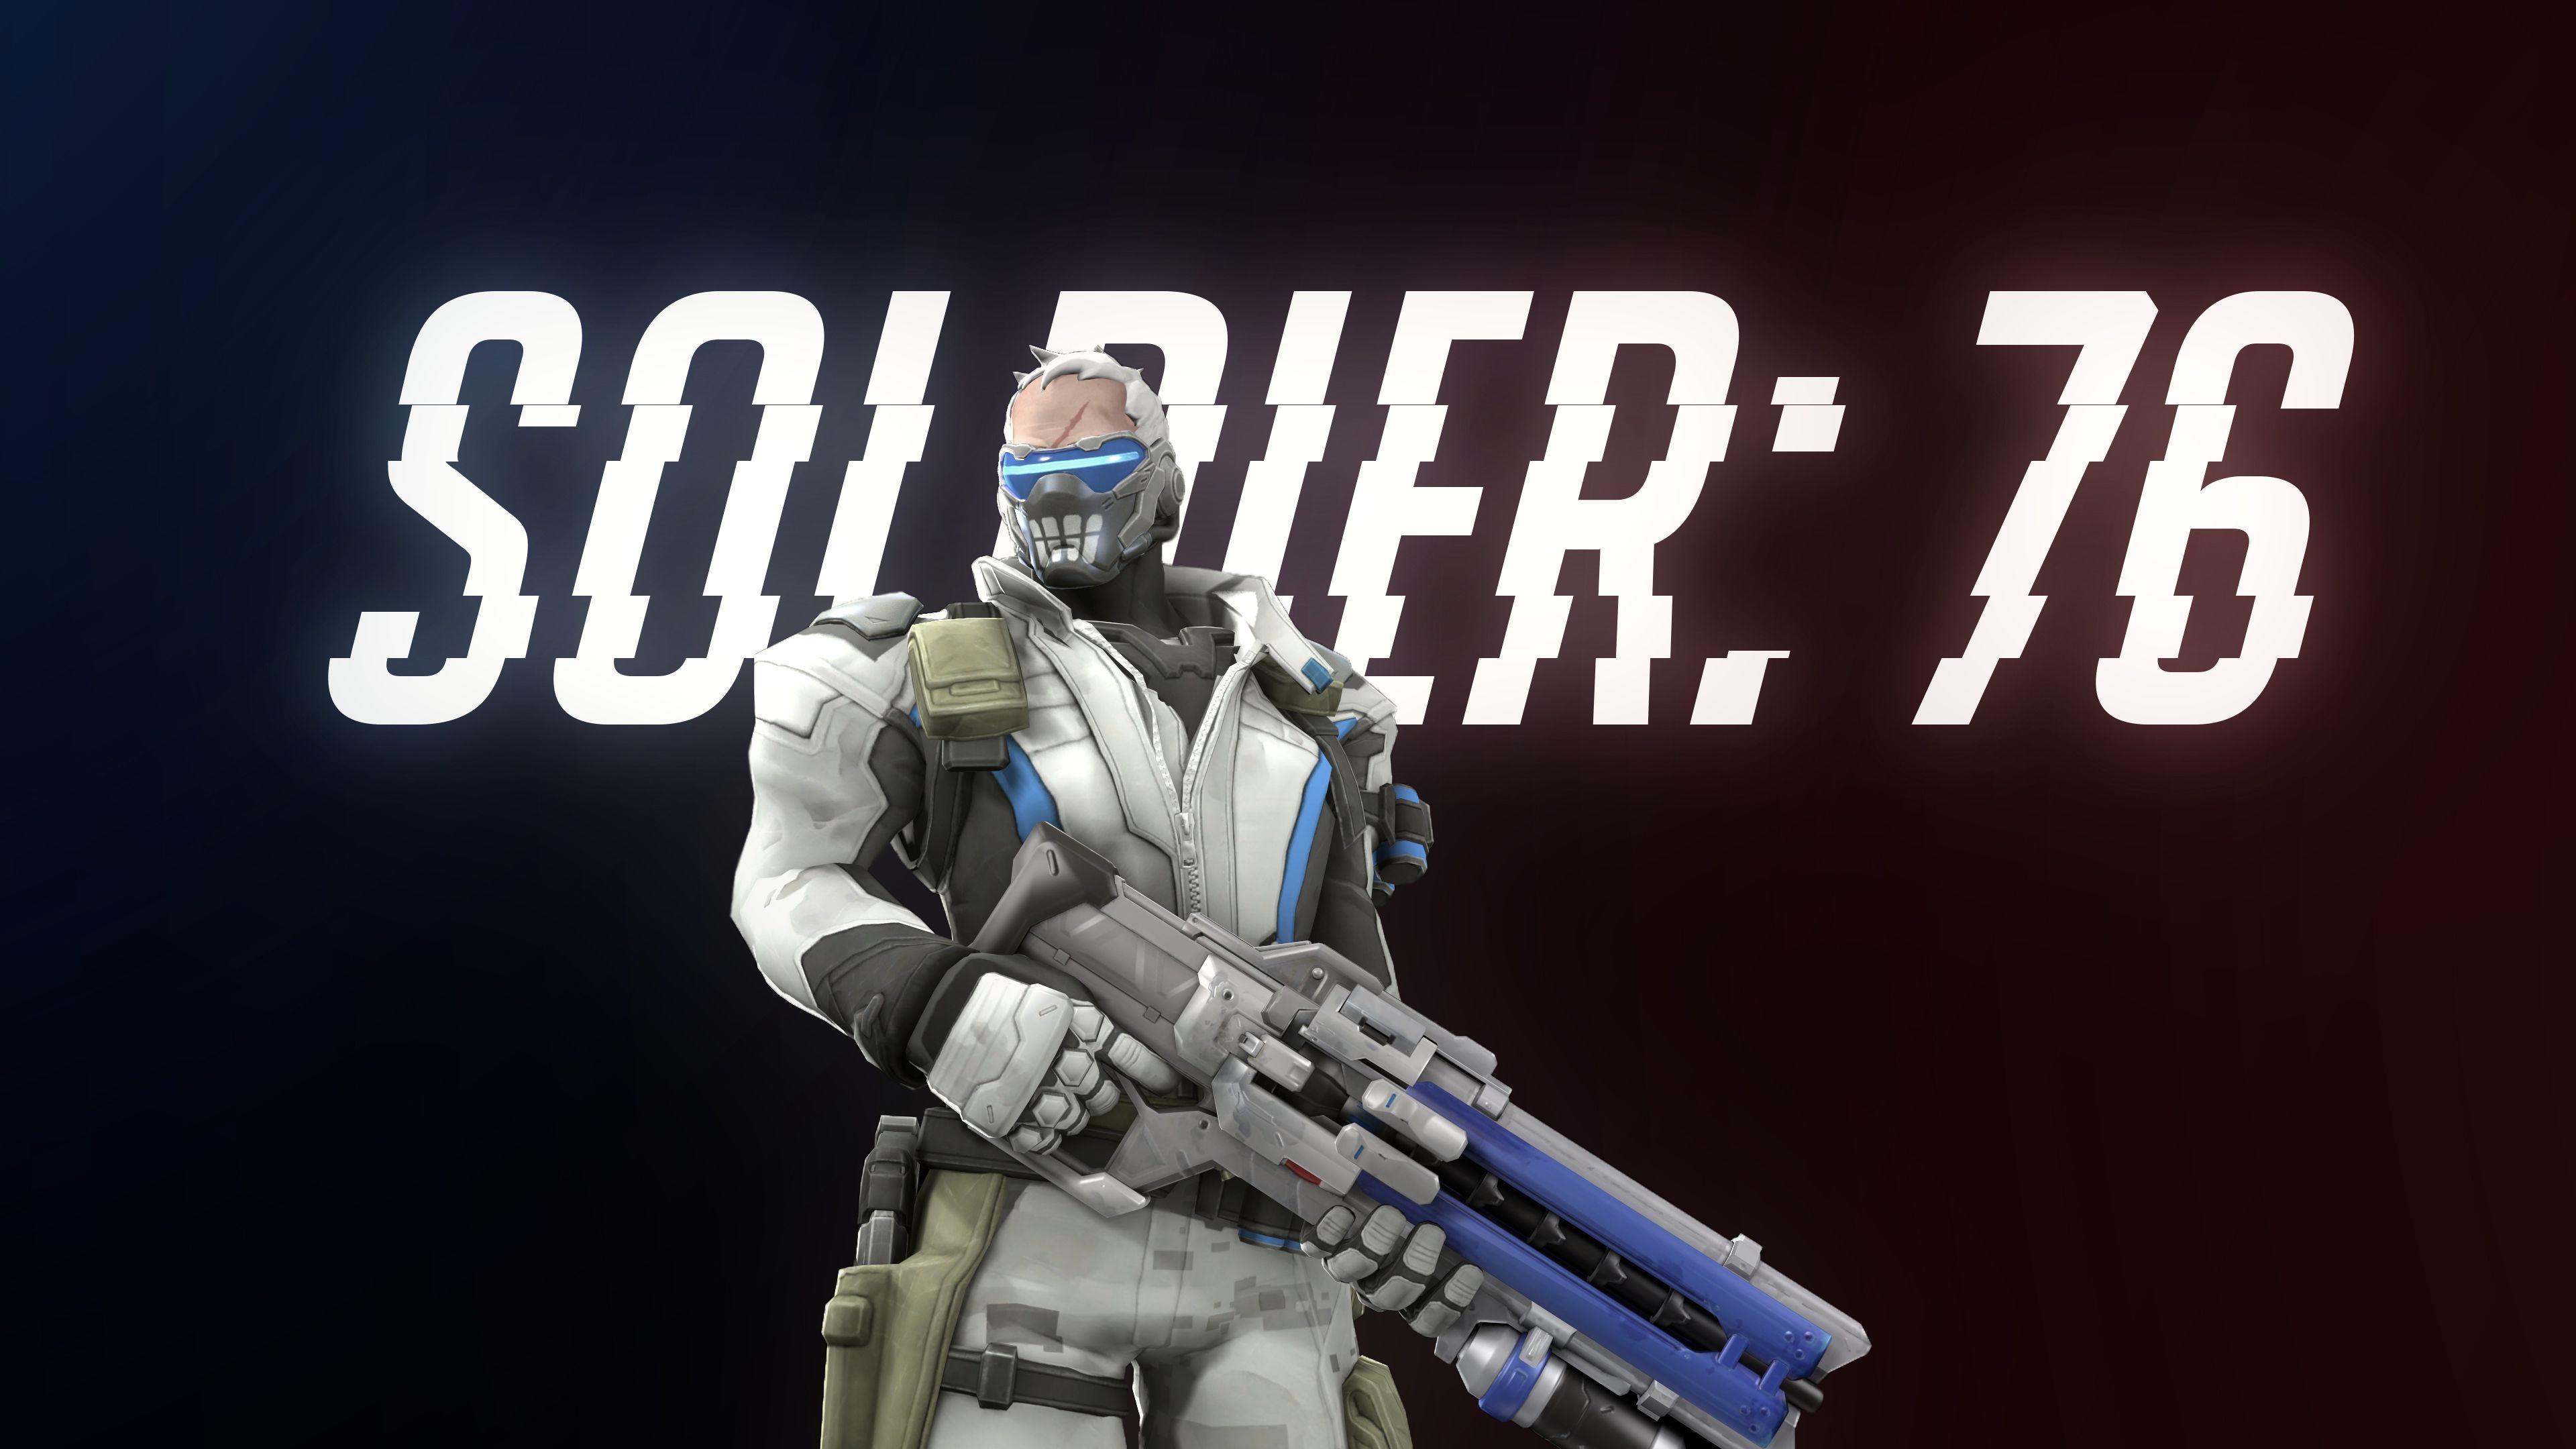 soldier 76 overwatch 2